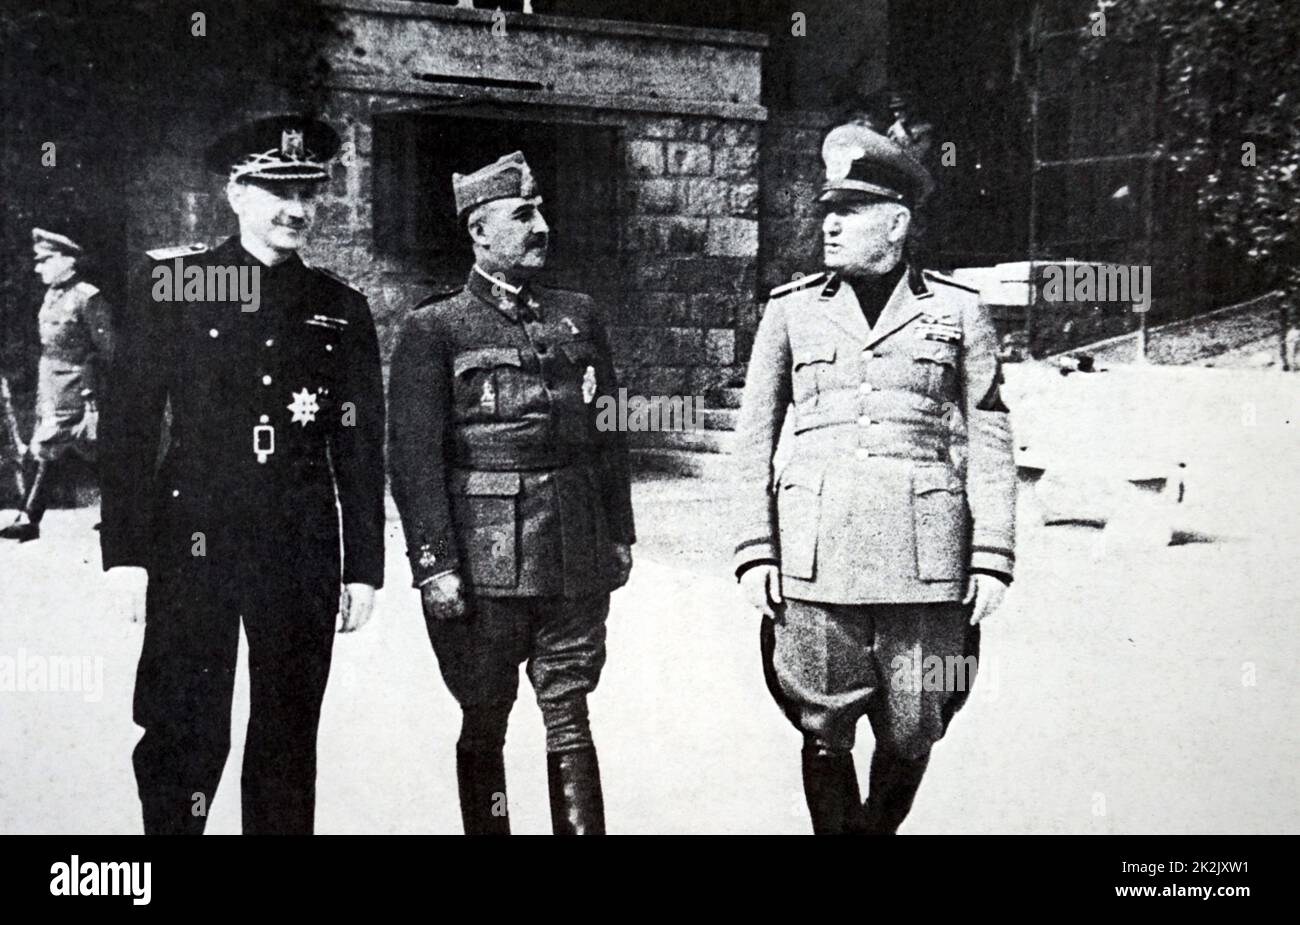 Fotografía de Ramón Serrano Suñer (1901-2003), el General Francisco Franco (1892-1975) y Benito Mussolini (1883-1945) celebrada en Bordighera, Italia. Fecha Siglo XX Foto de stock